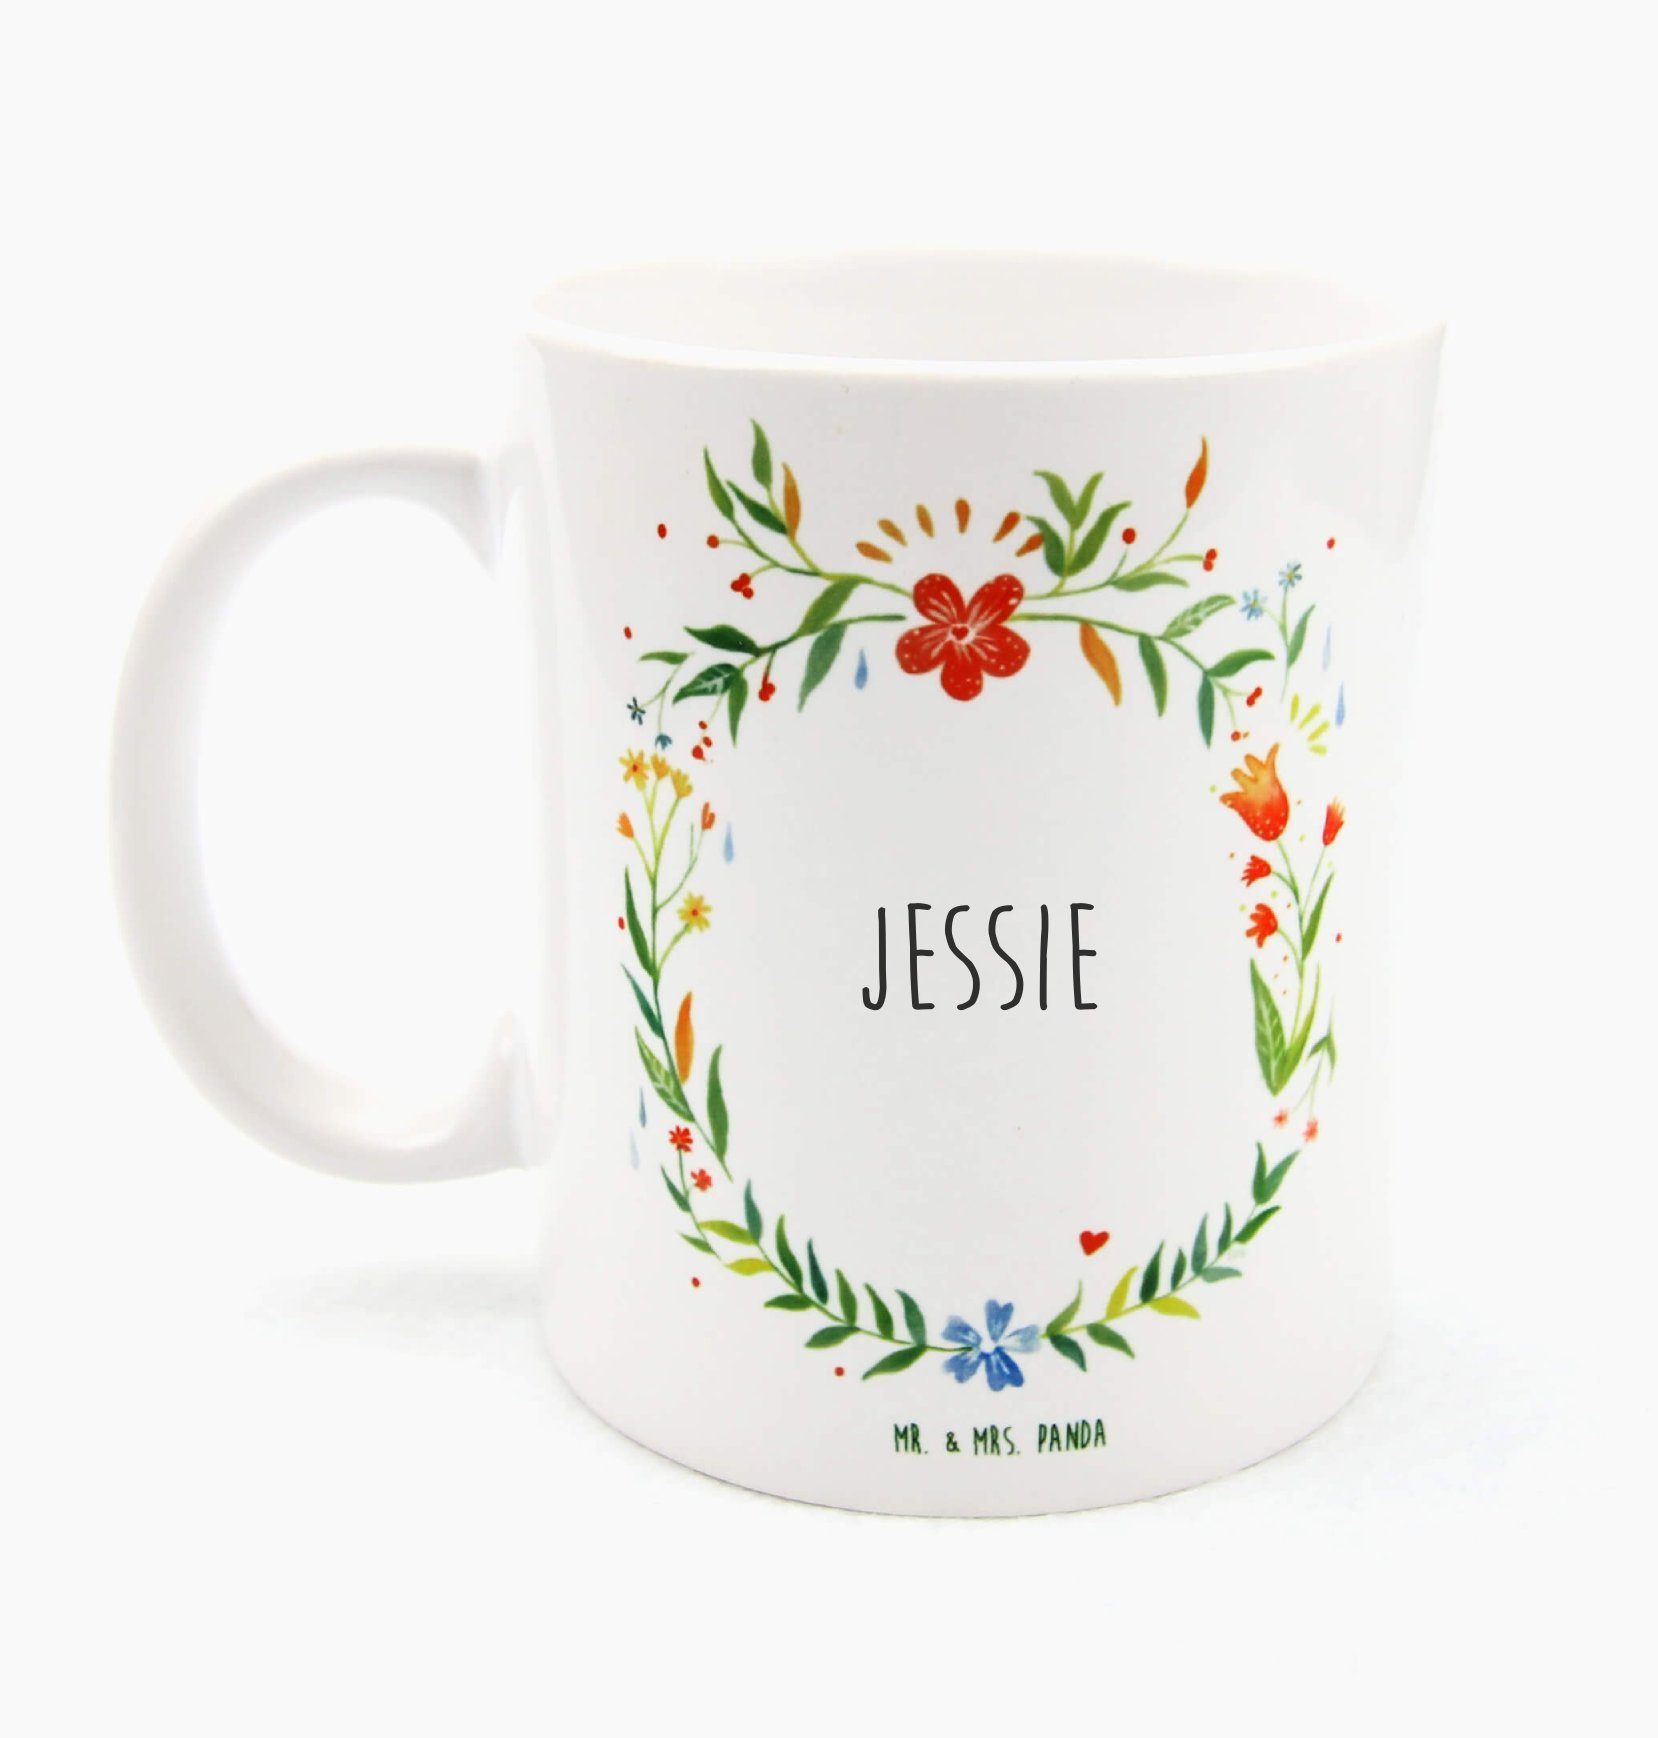 Mr. & Mrs. Panda Tasse Jessie - Geschenk, Porzellantasse, Geschenk Tasse, Kaffeebecher, Tass, Keramik